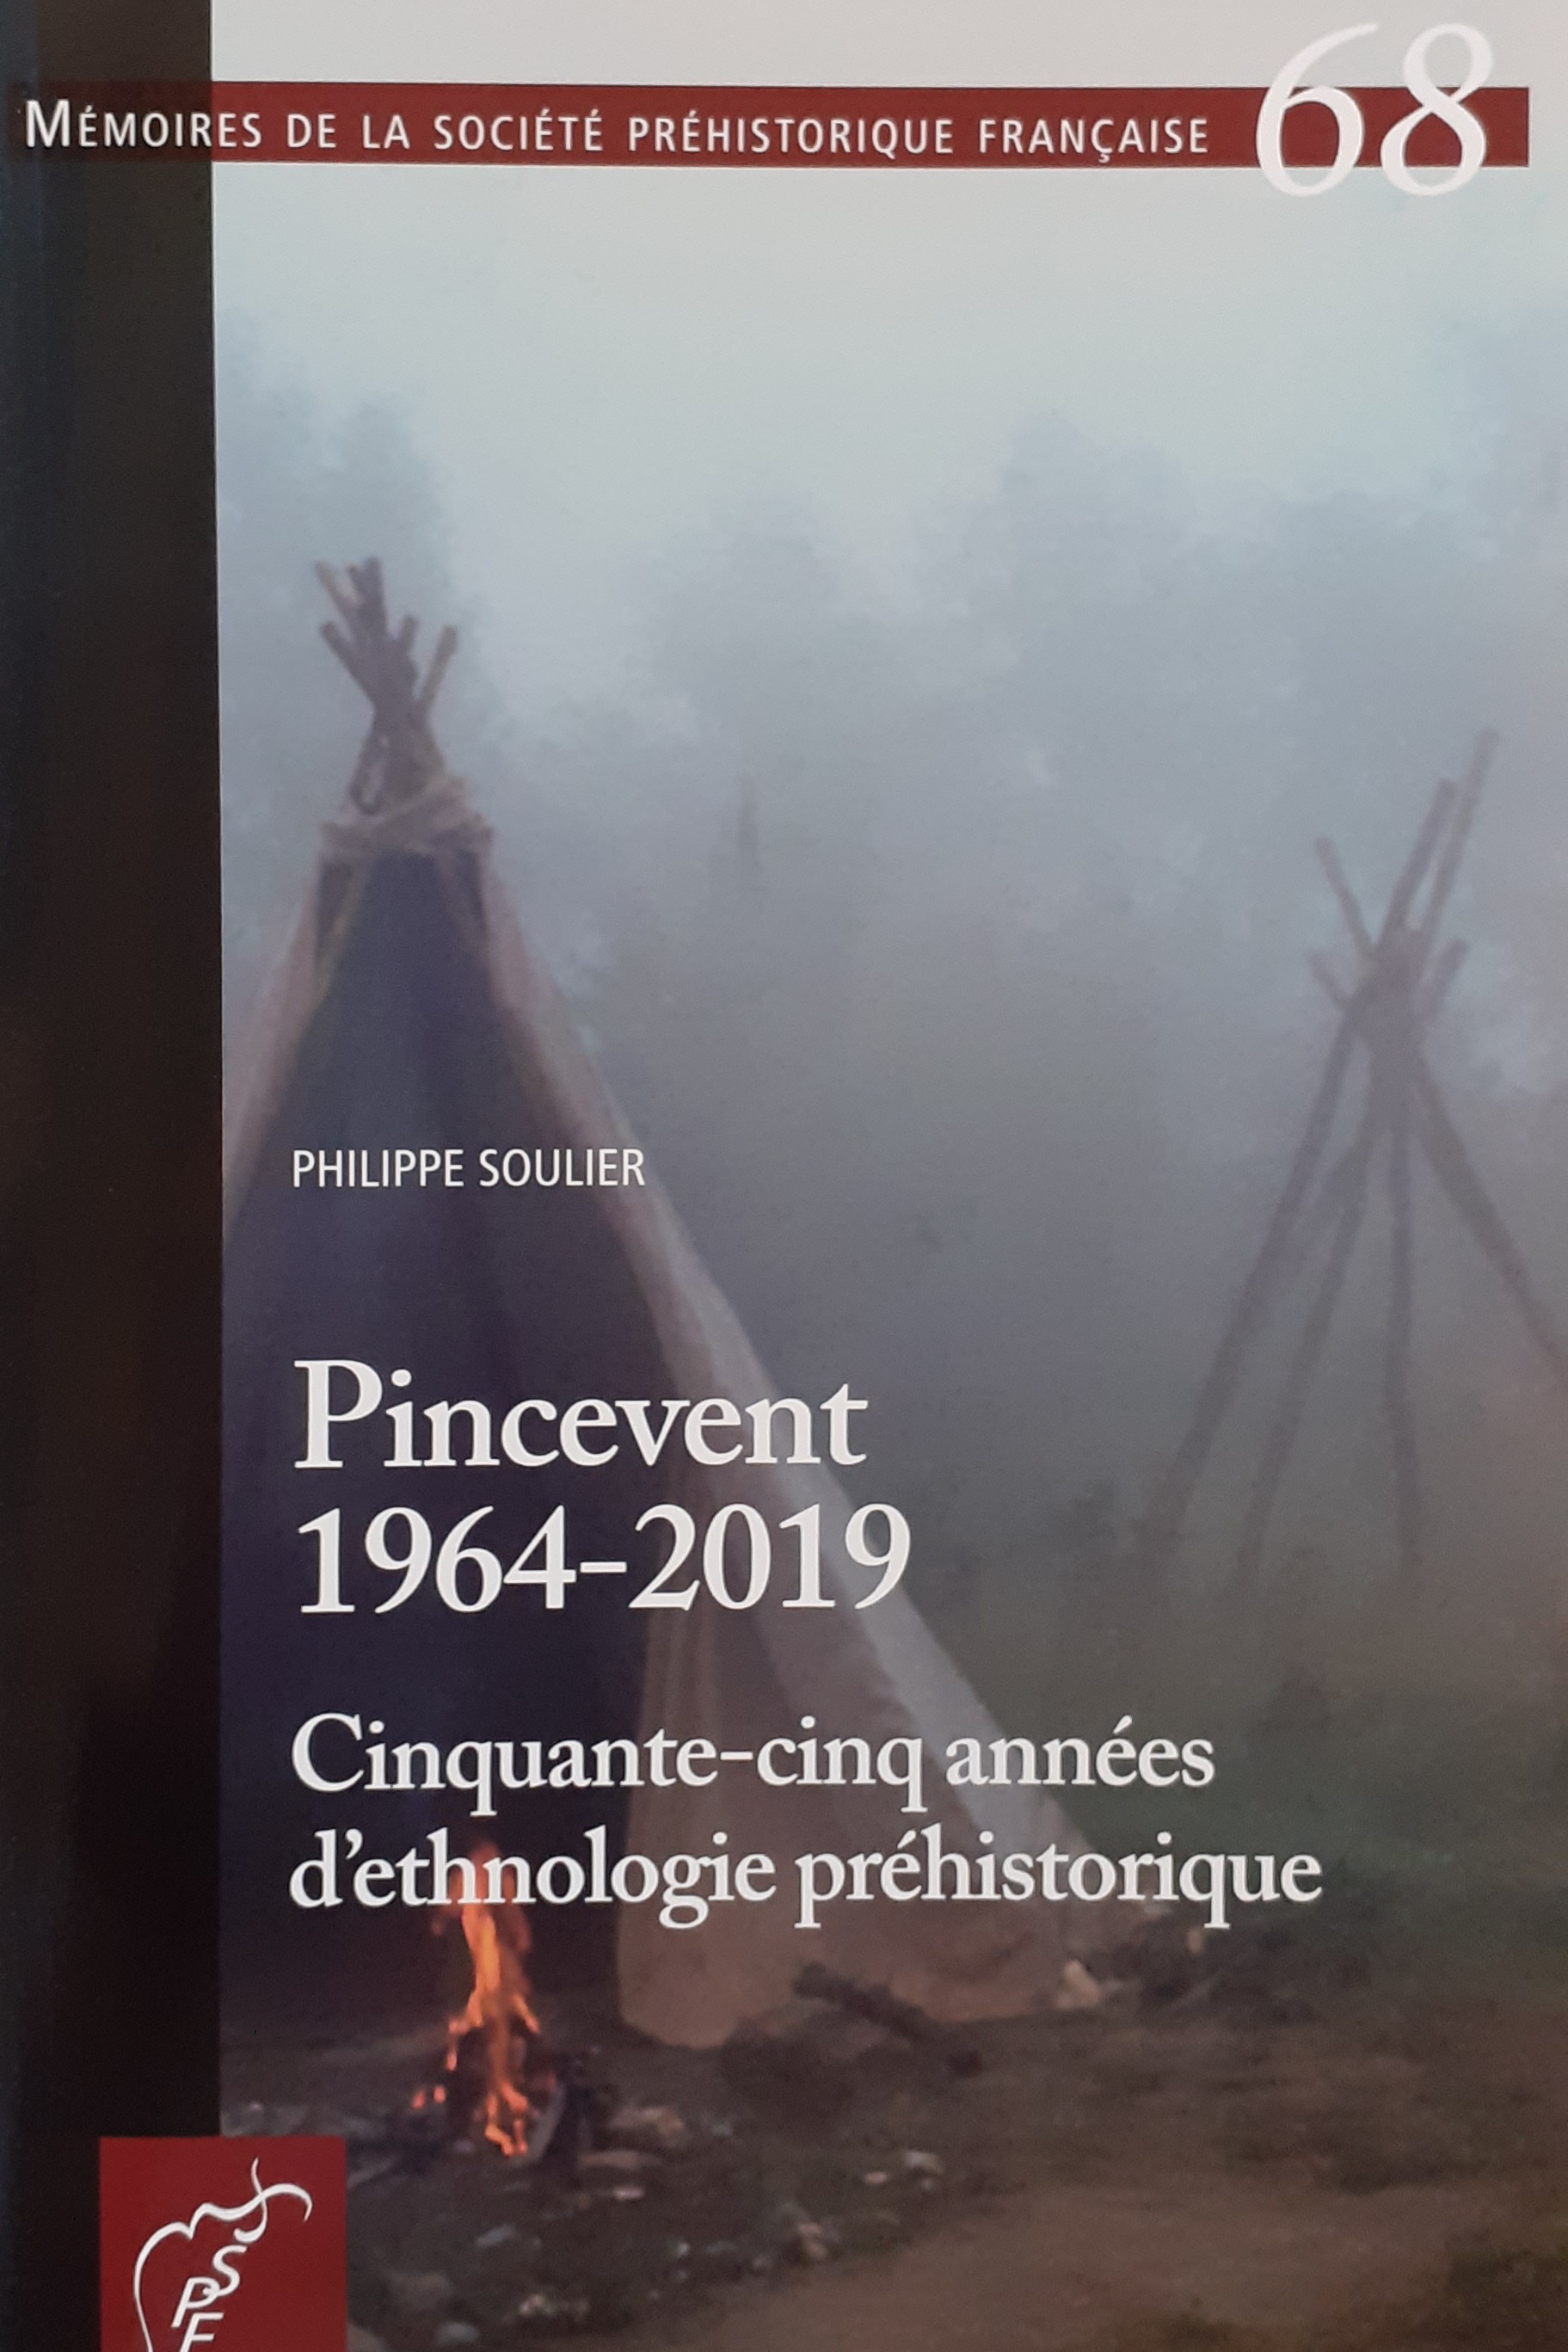 Pincevent 1964-2019. Cinquante-cins années d'ethnologie préhistorique, (Mémoire SPF 68), 2021, 168 p.